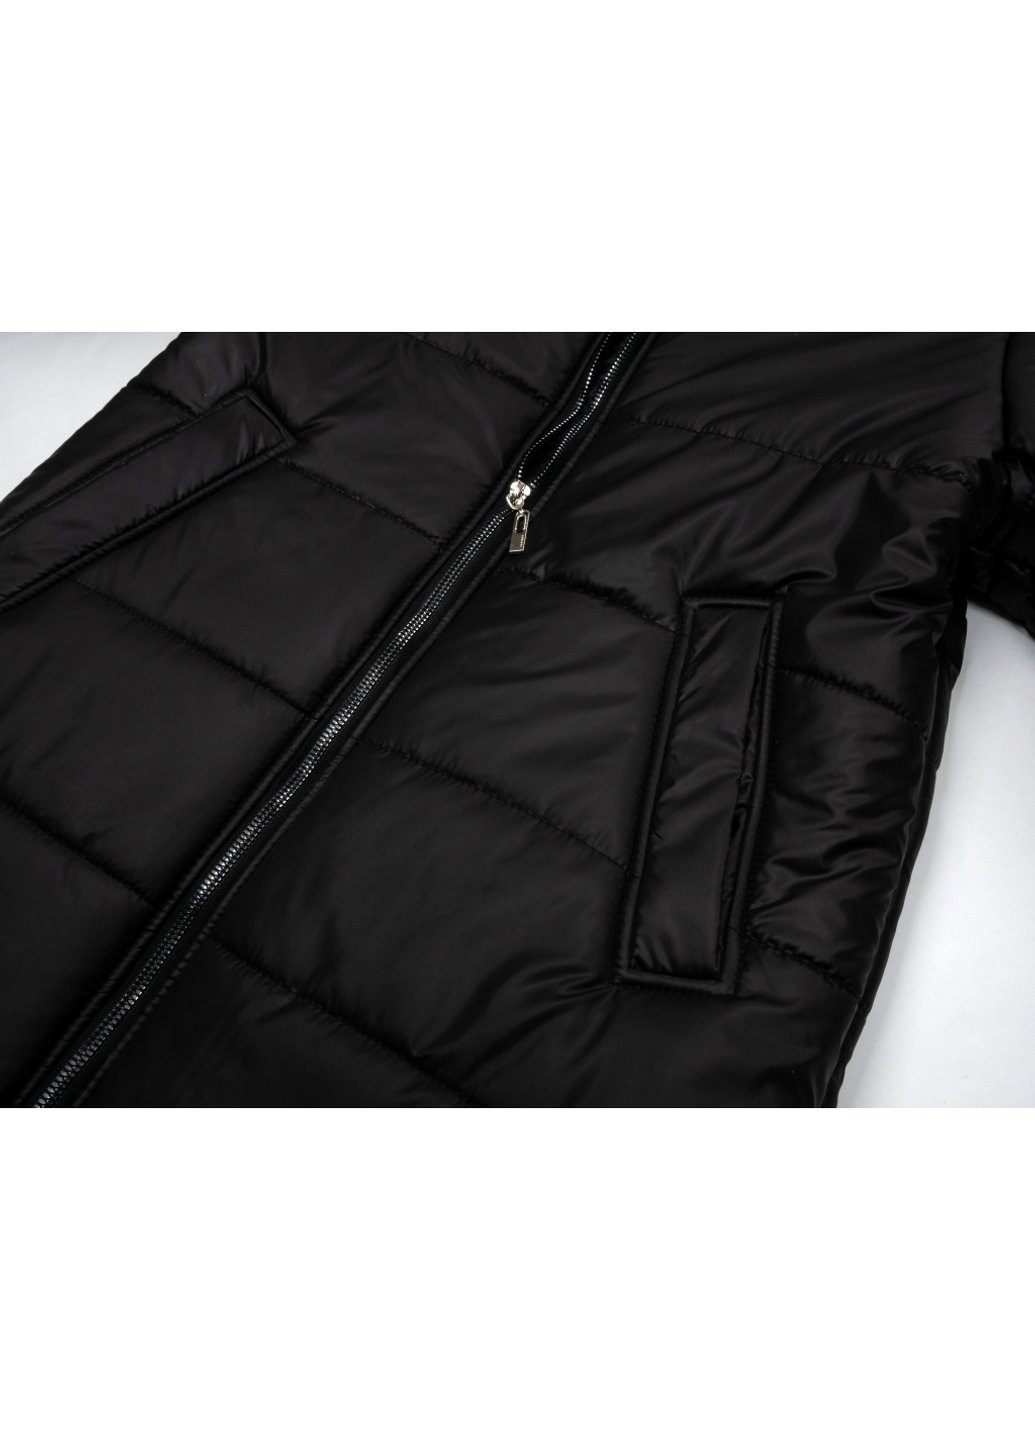 Черная демисезонная куртка пальто "donna" (21705-152g-black) Brilliant